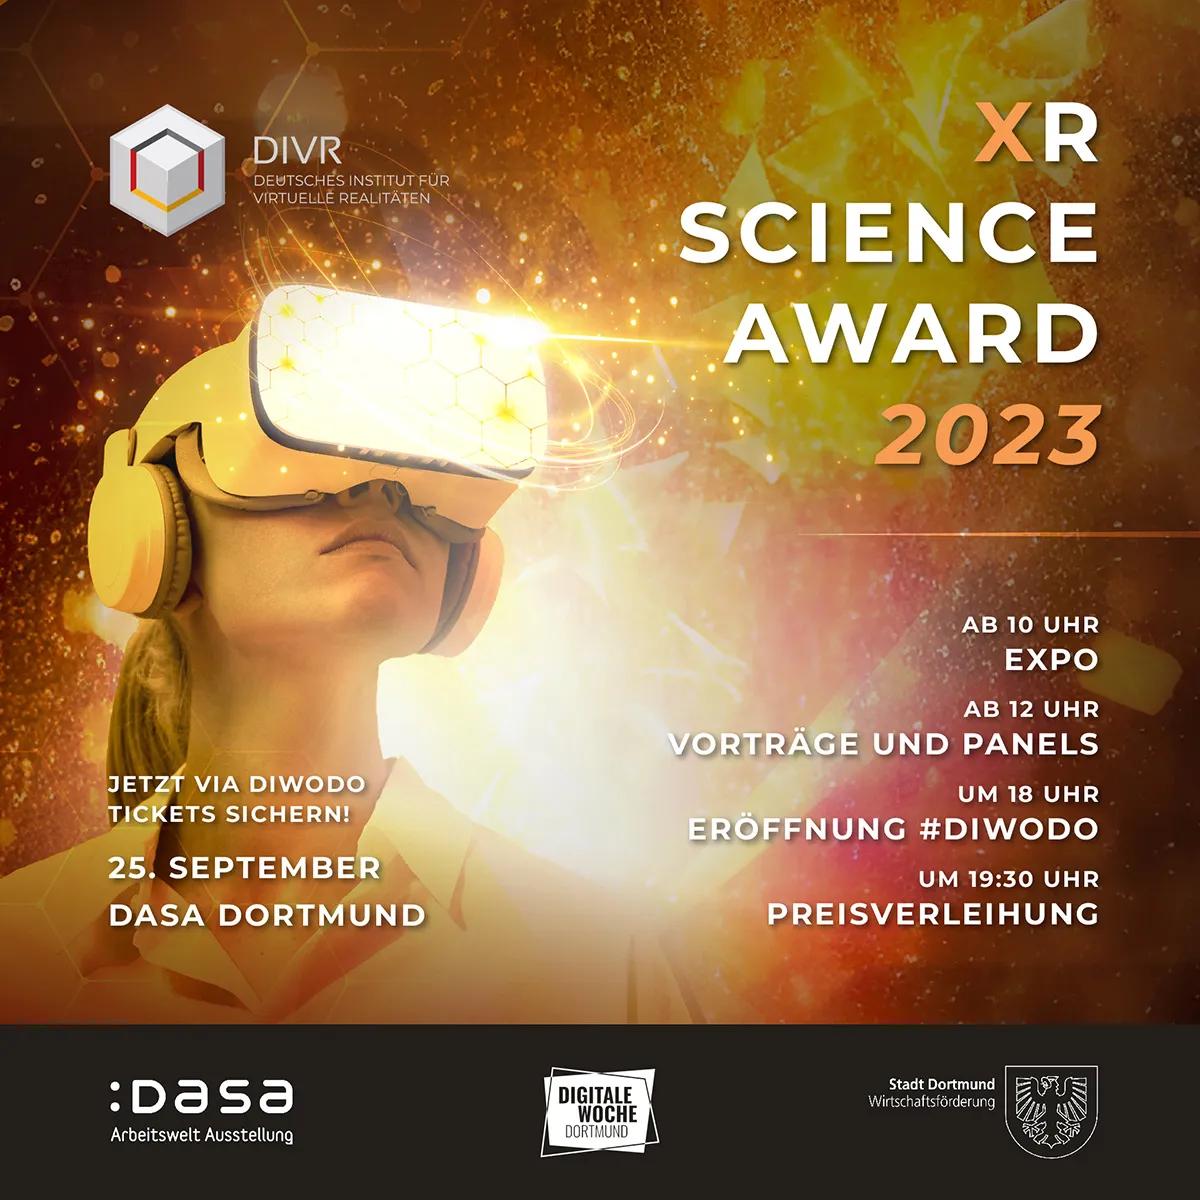 DIVR XR Science Award 2023 - Spitzenforschung hautnah!